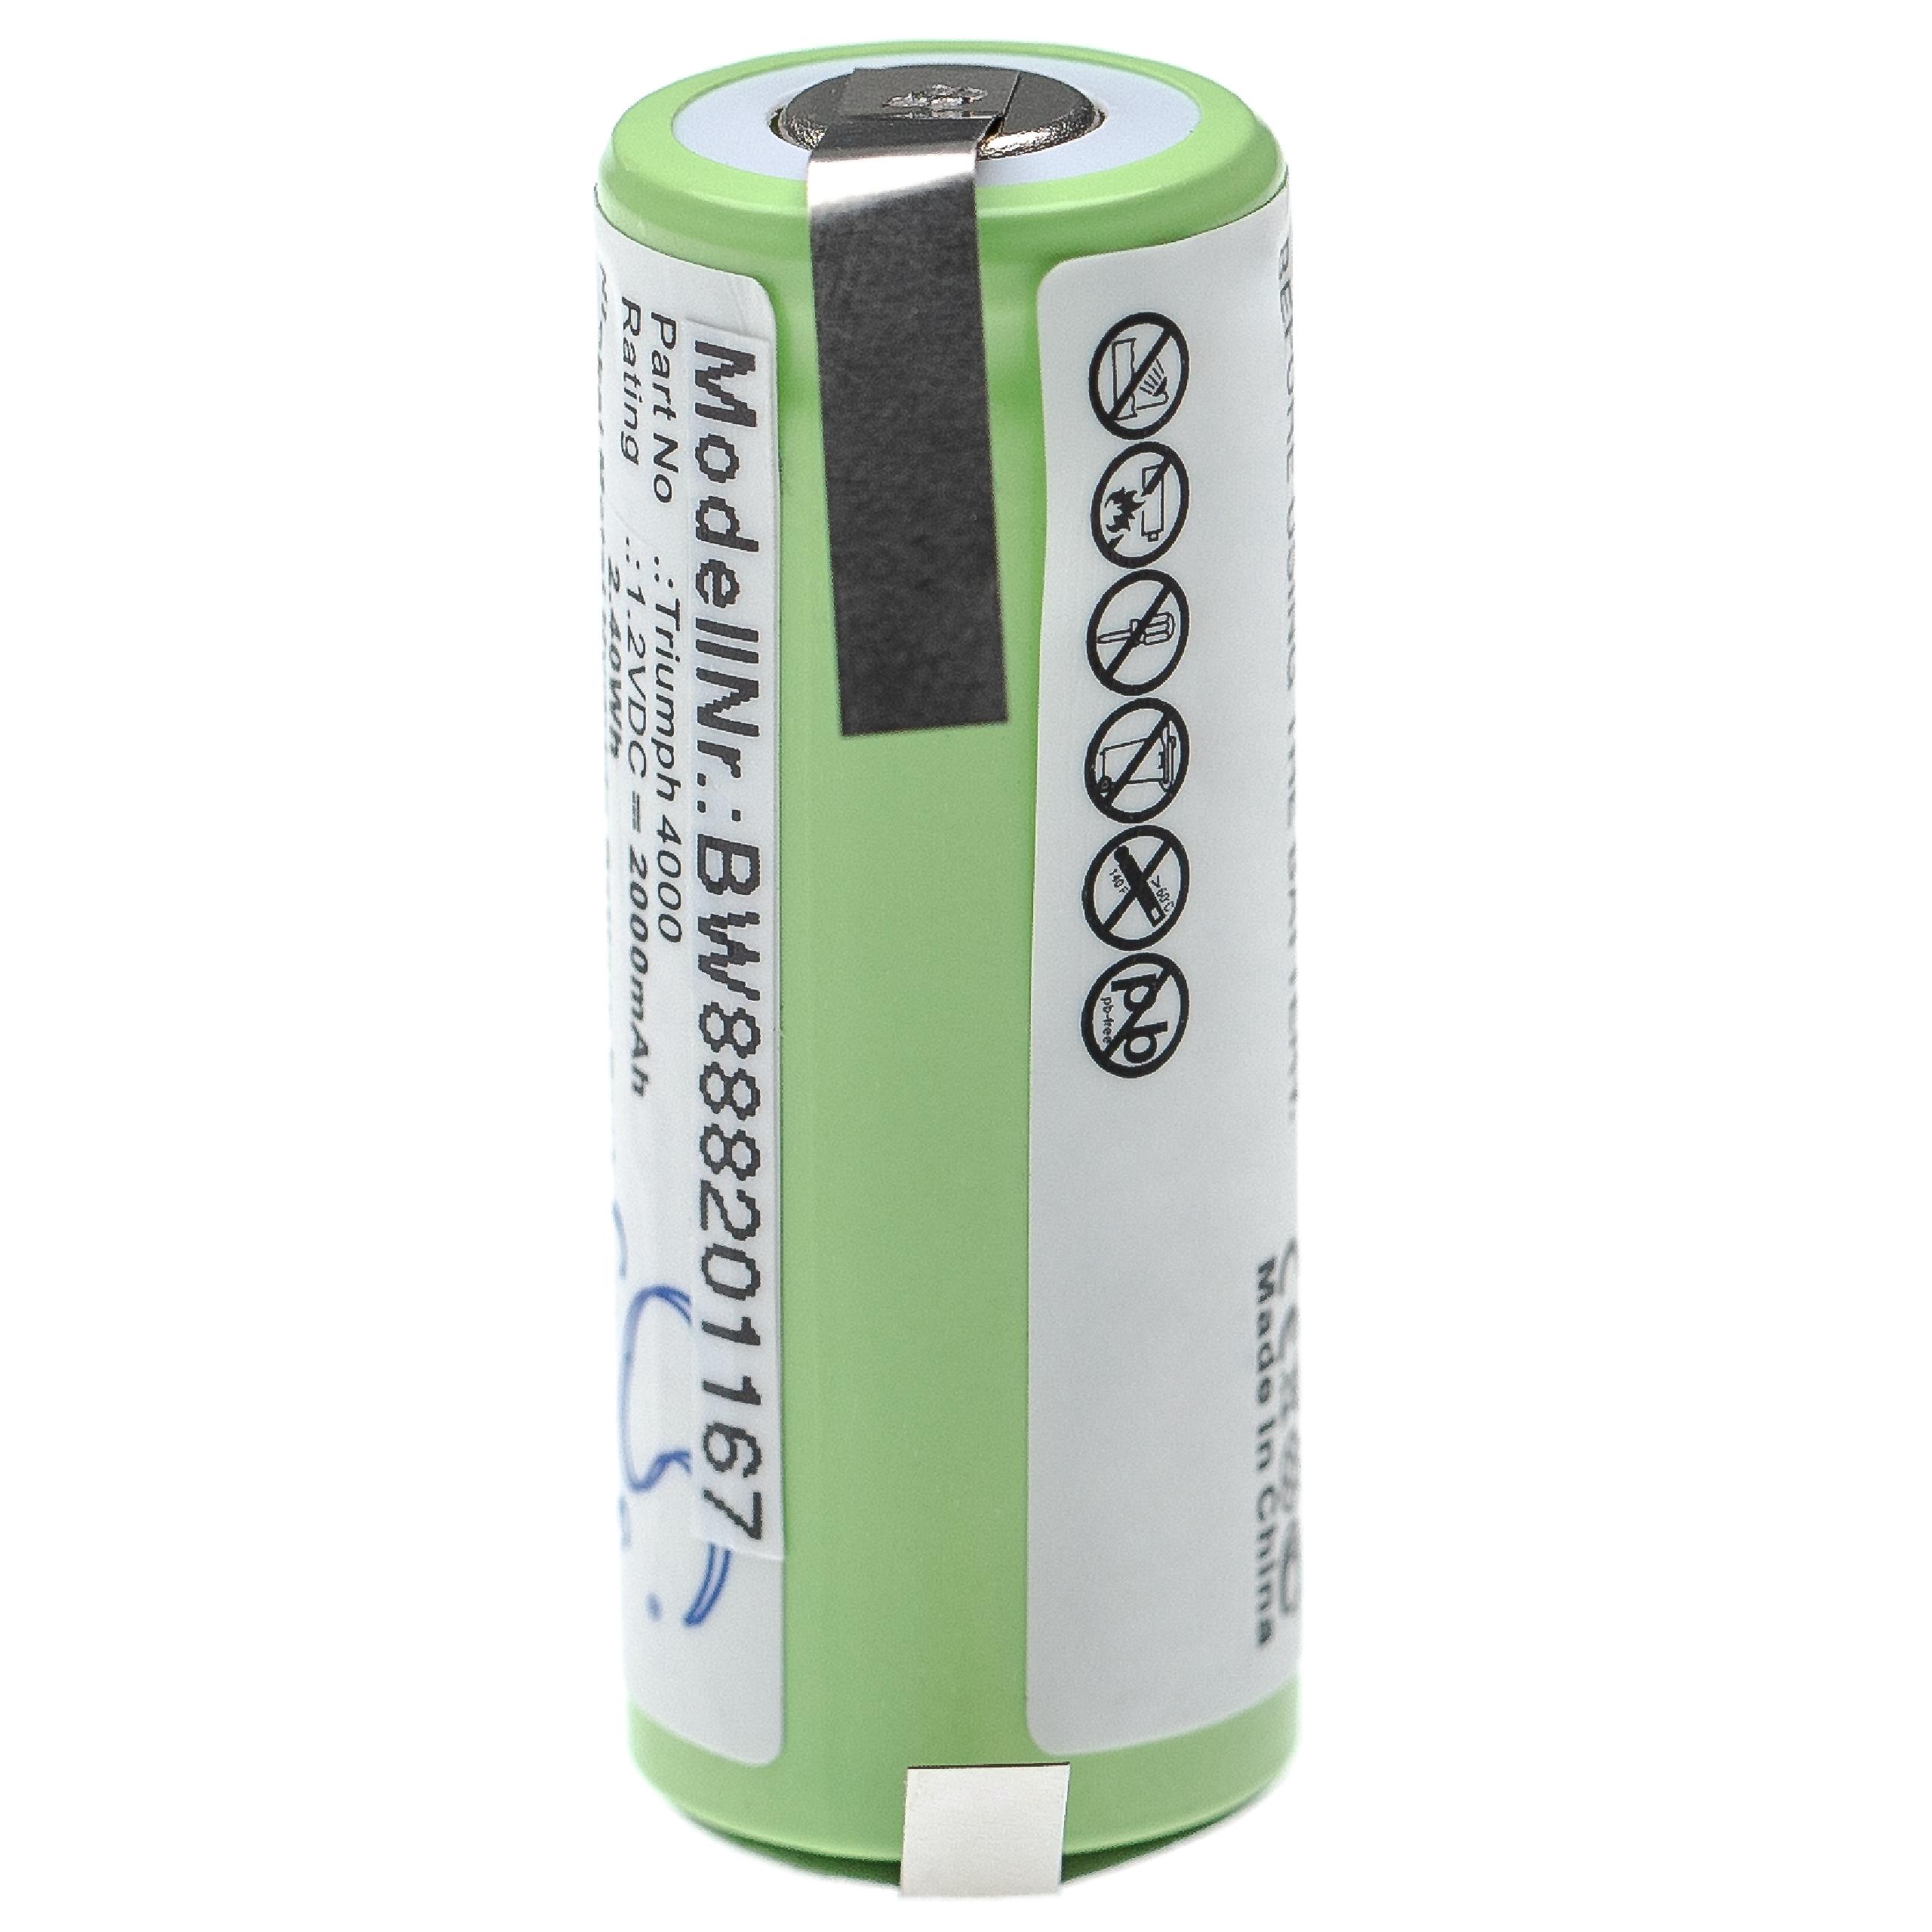 Batterie remplace Oral-B 3745, 3762, 3761 pour brosse à dents - 2000mAh 1,2V NiMH